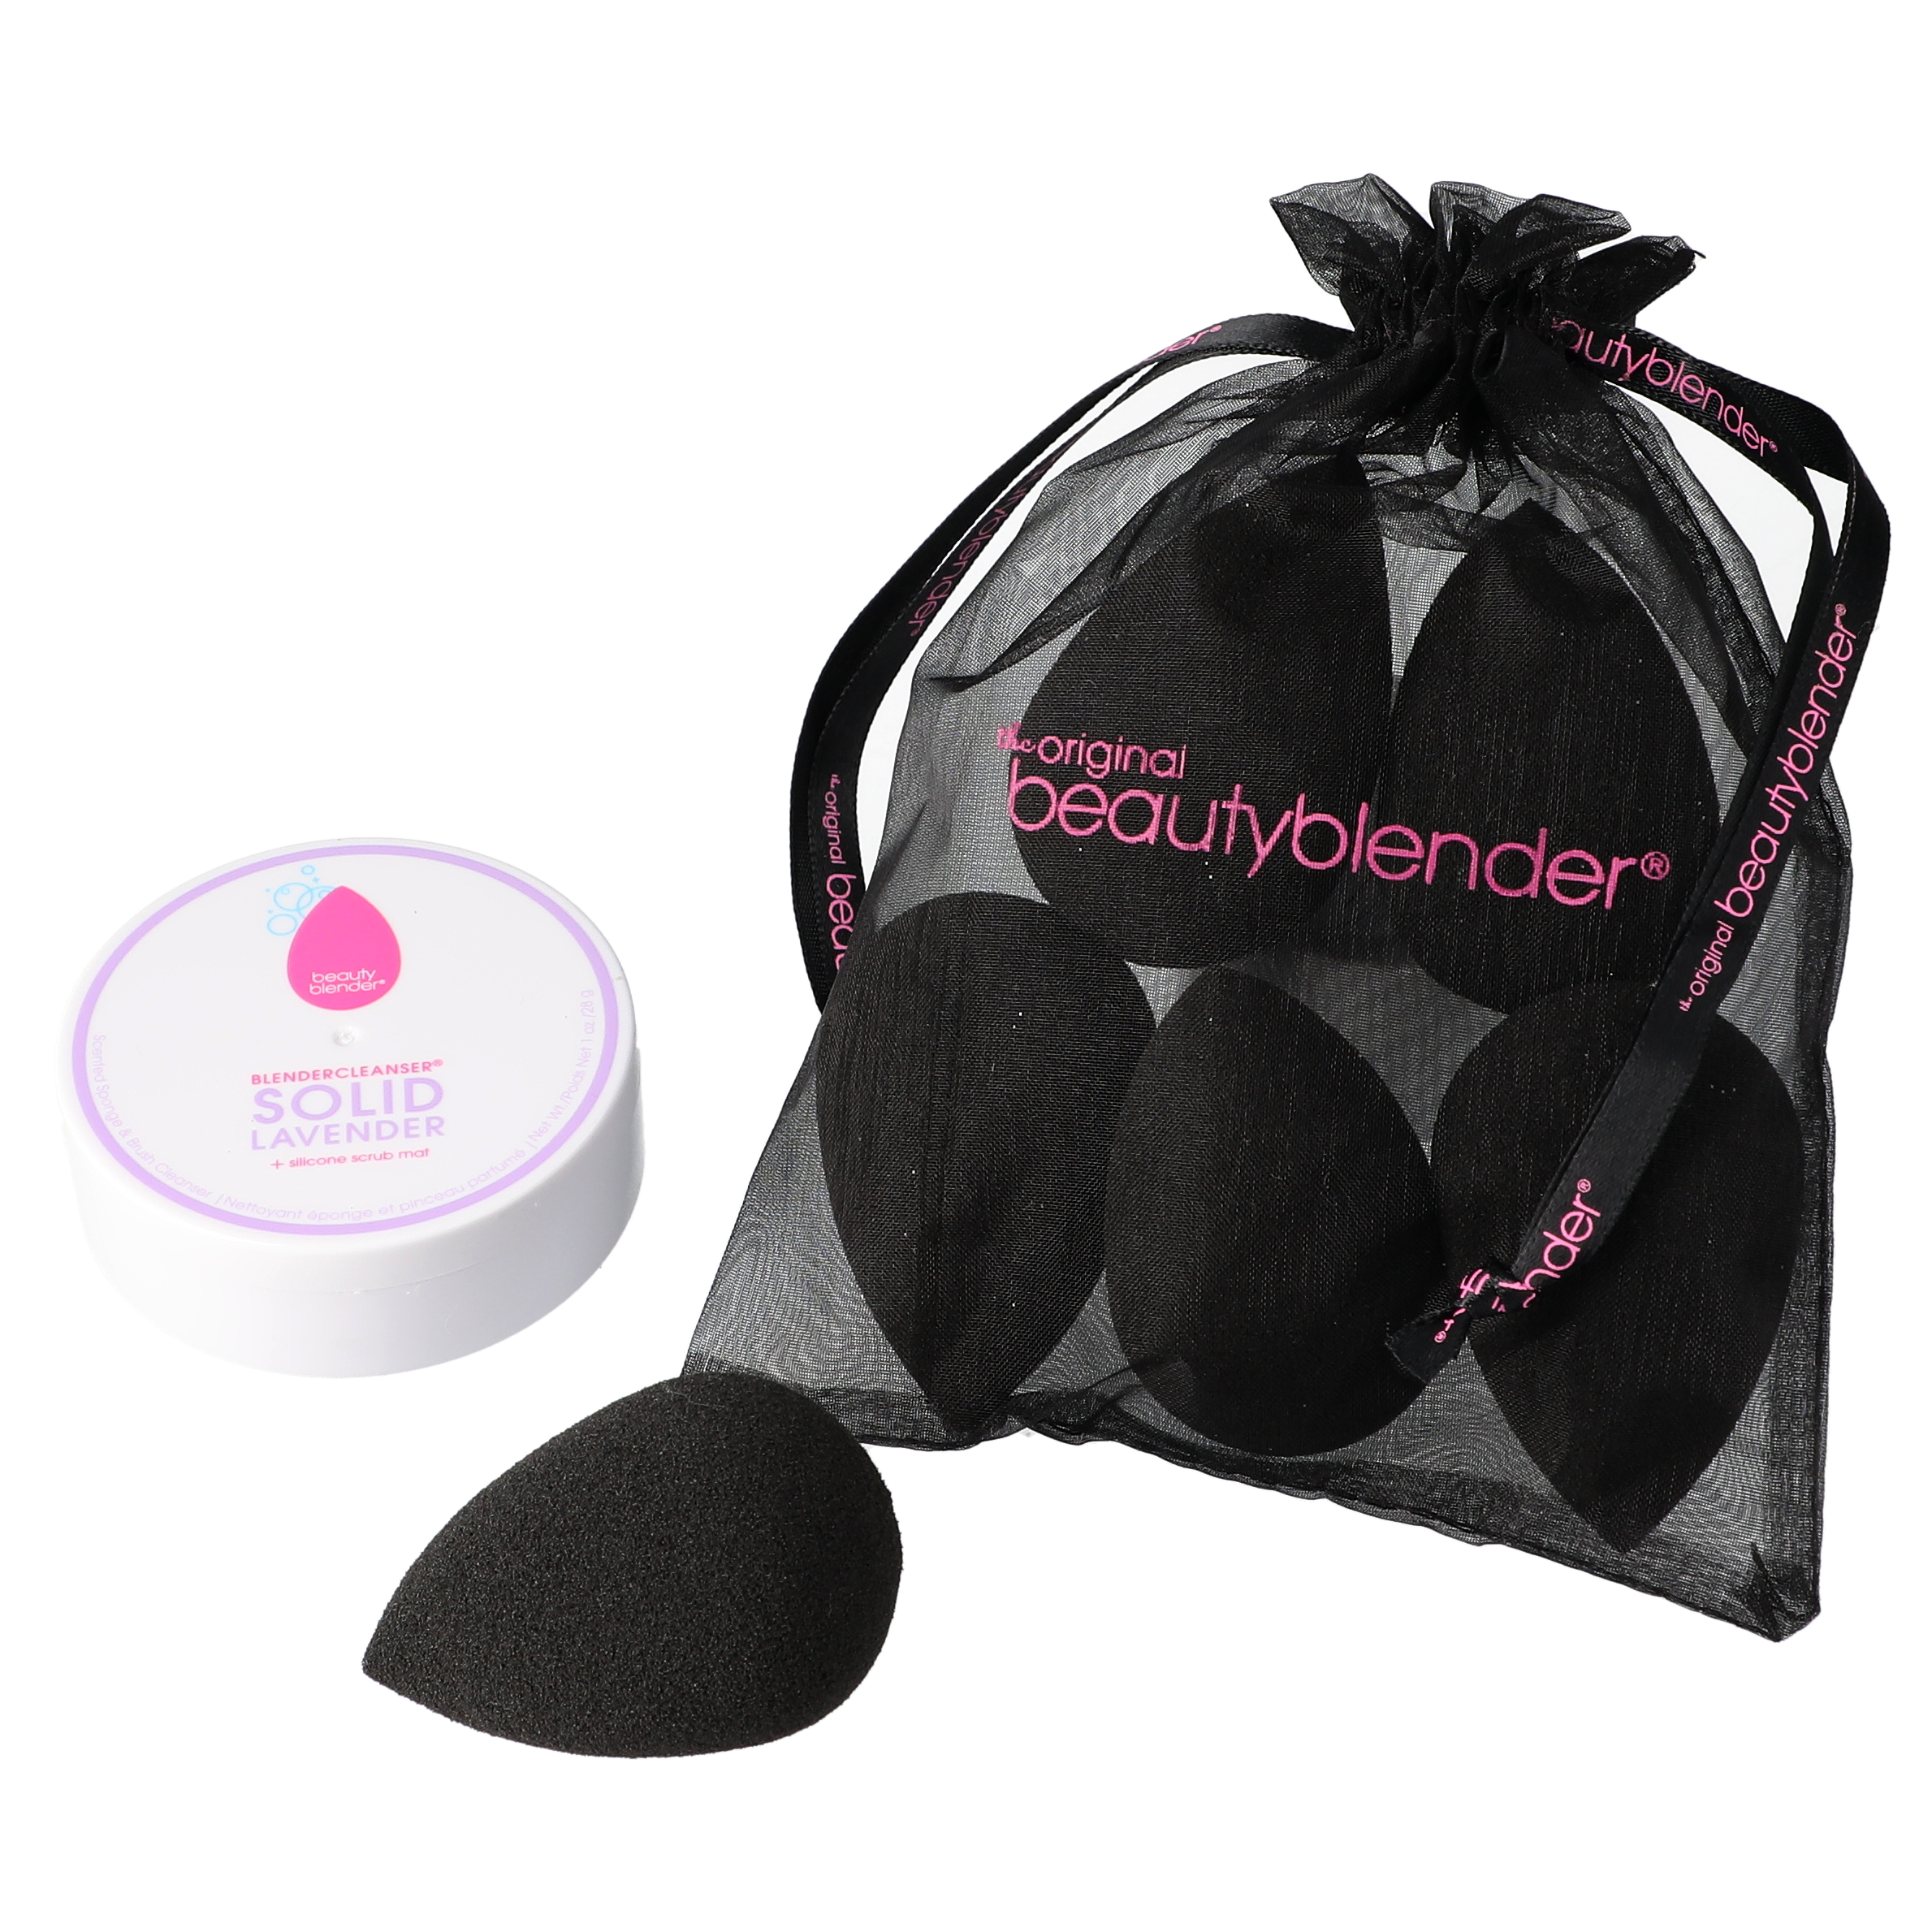 Beautyblender Pro Pack 6